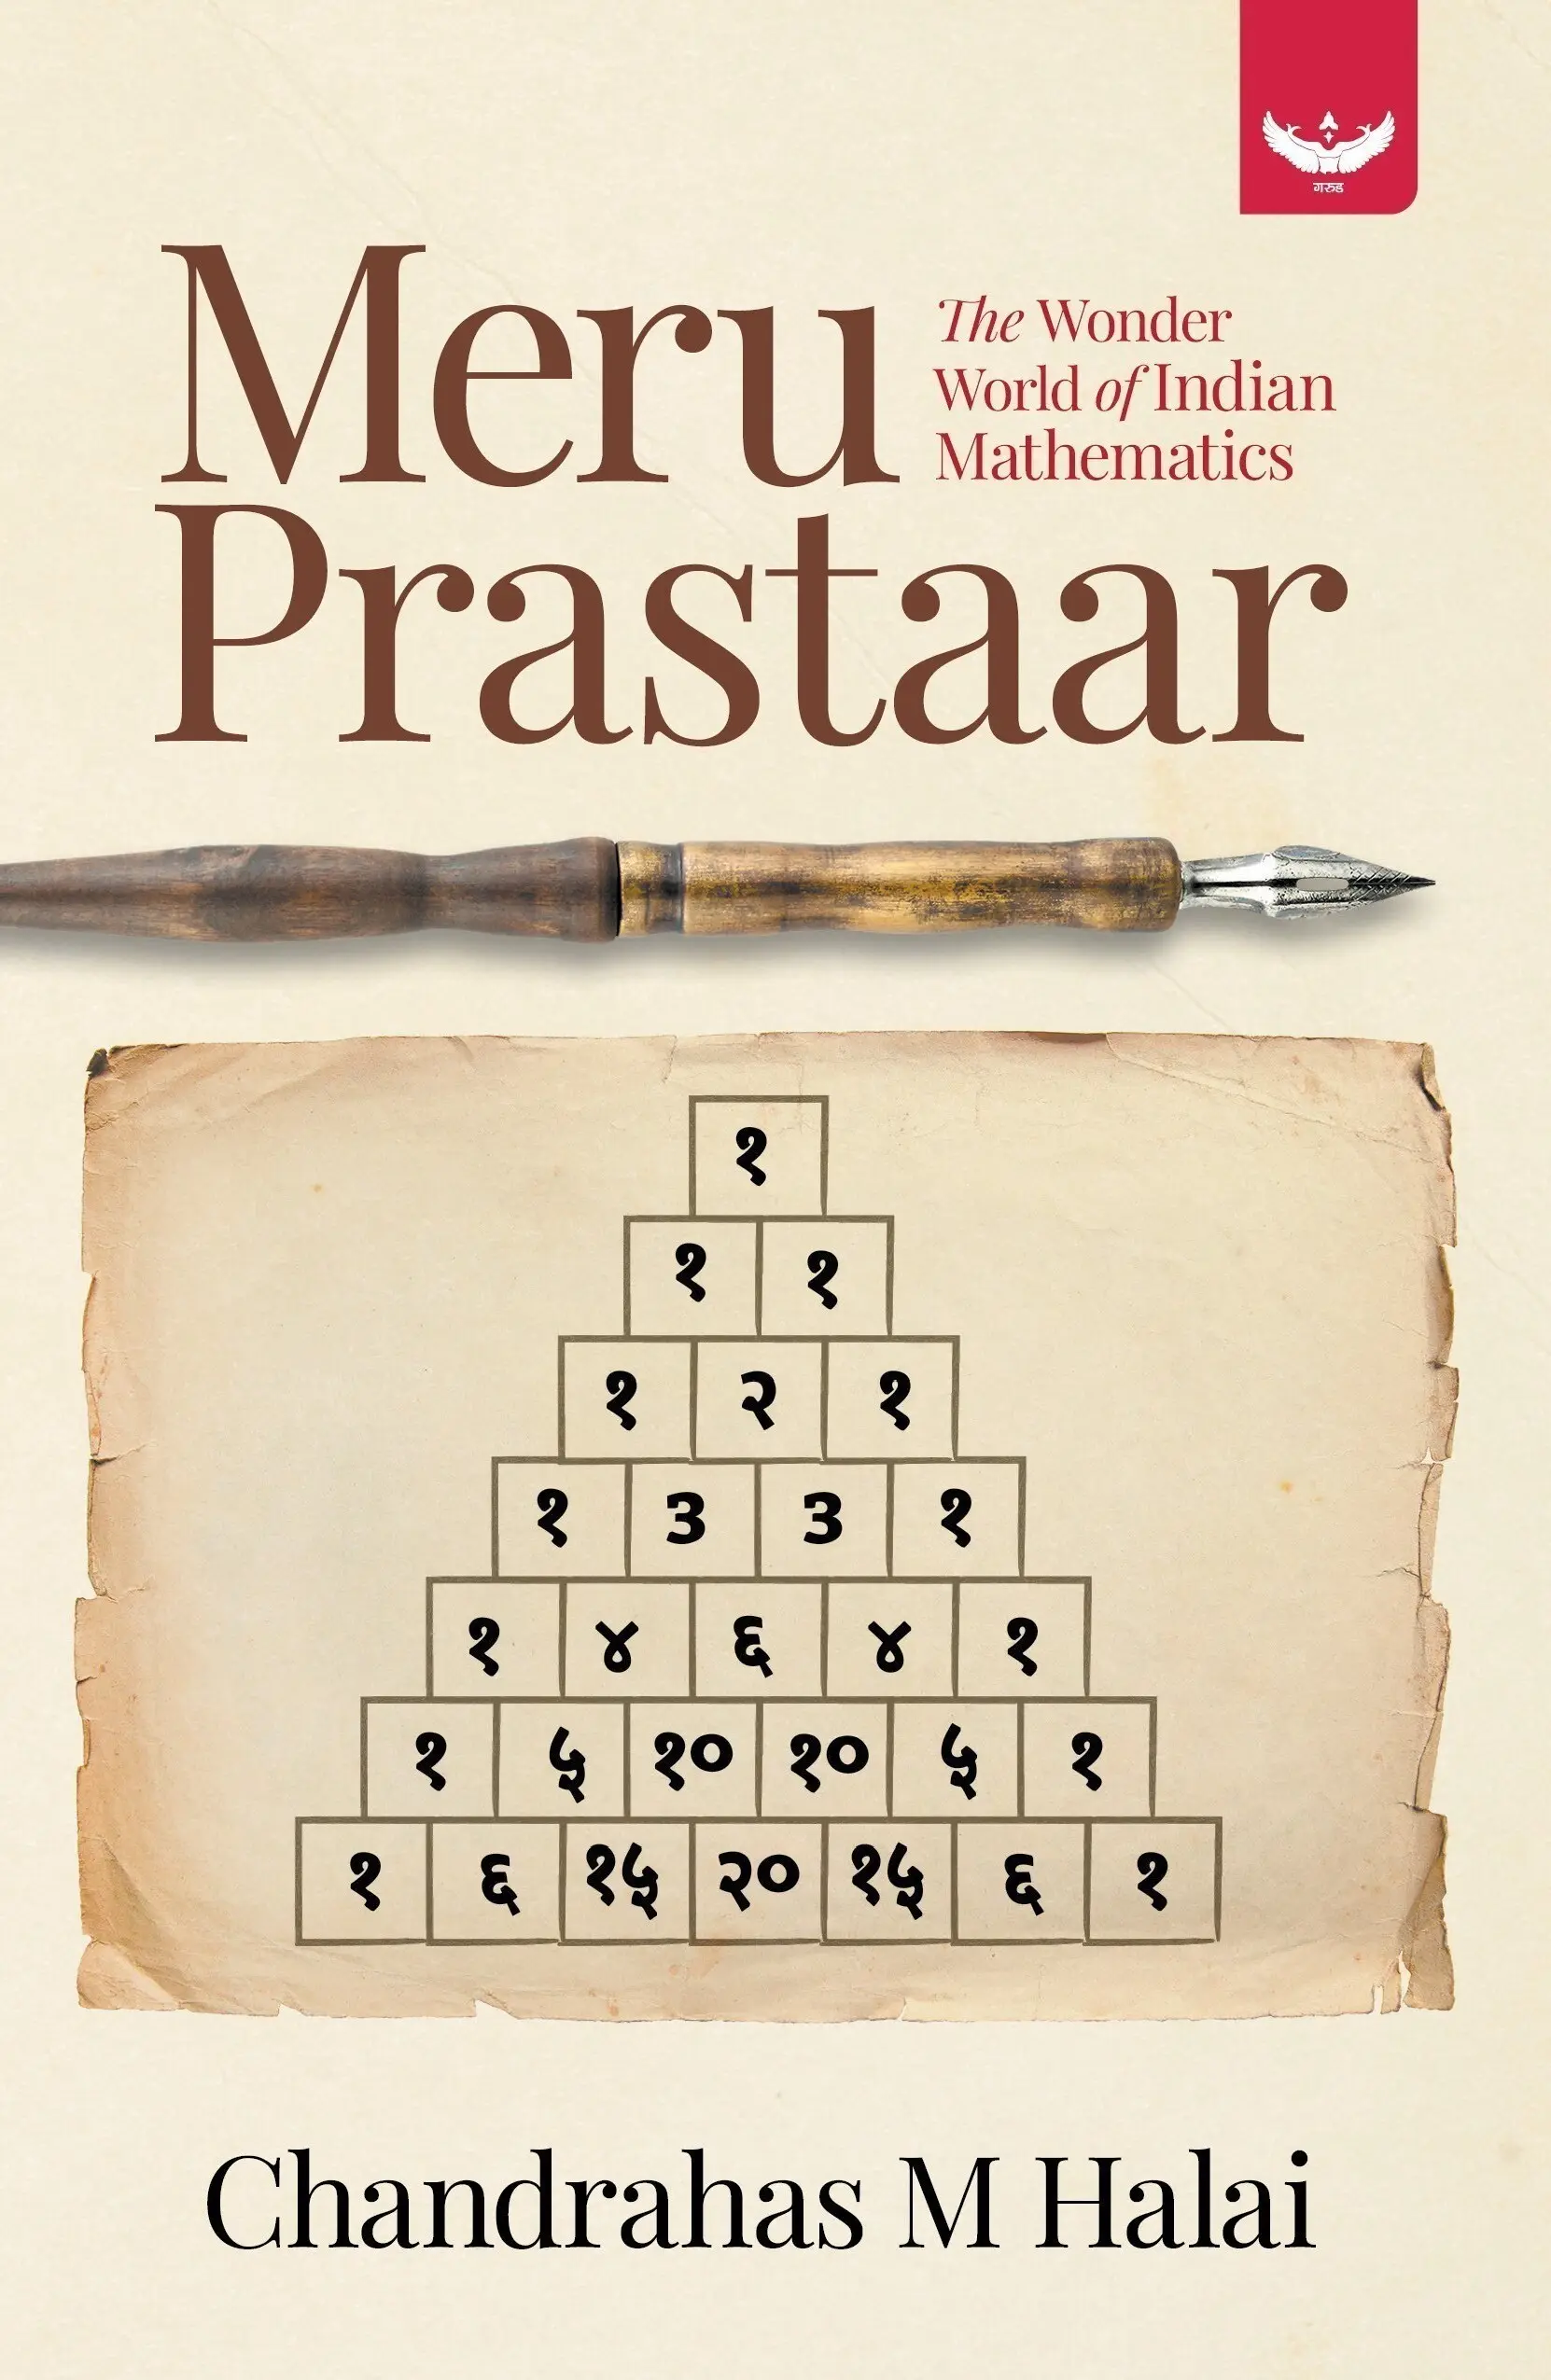 The　Prastaar:　Garuda　Mathematics　Indian　World　of　Wonder　Meru　Prakashan